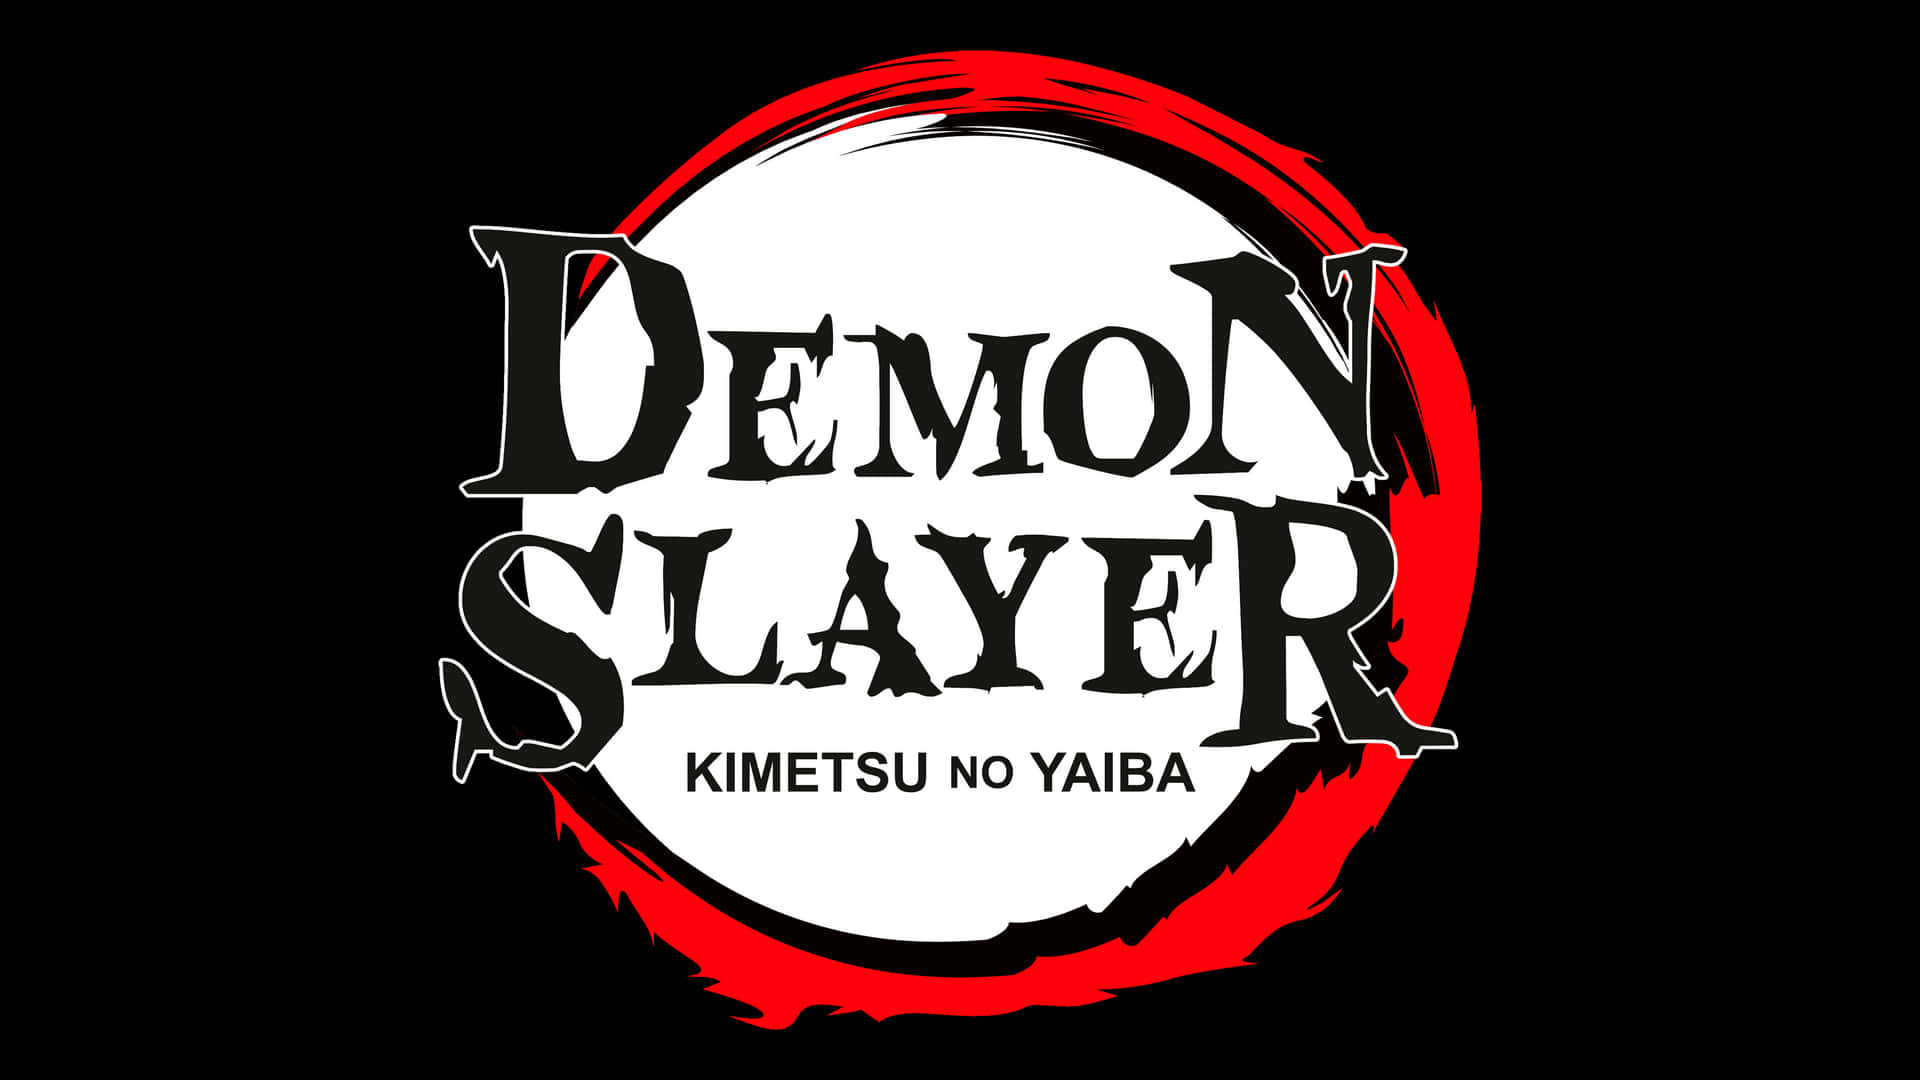 Demon Slayer- beskyttelse af menneskeheden fra mægtige dæmoner.